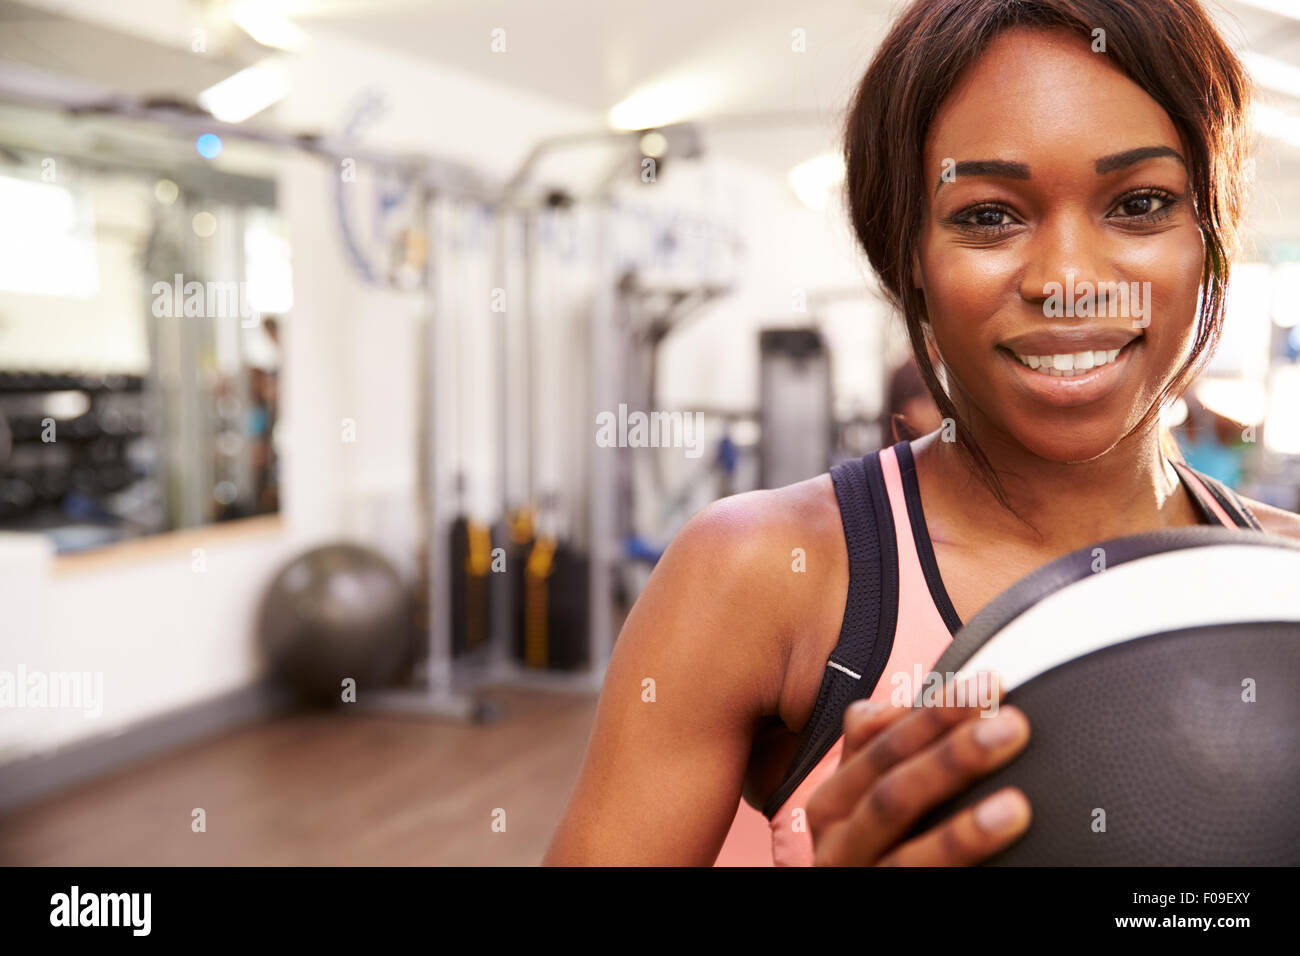 Porträt einer lächelnden Frau hält einen Medizinball in einem Fitnessstudio, Textfreiraum Stockfoto